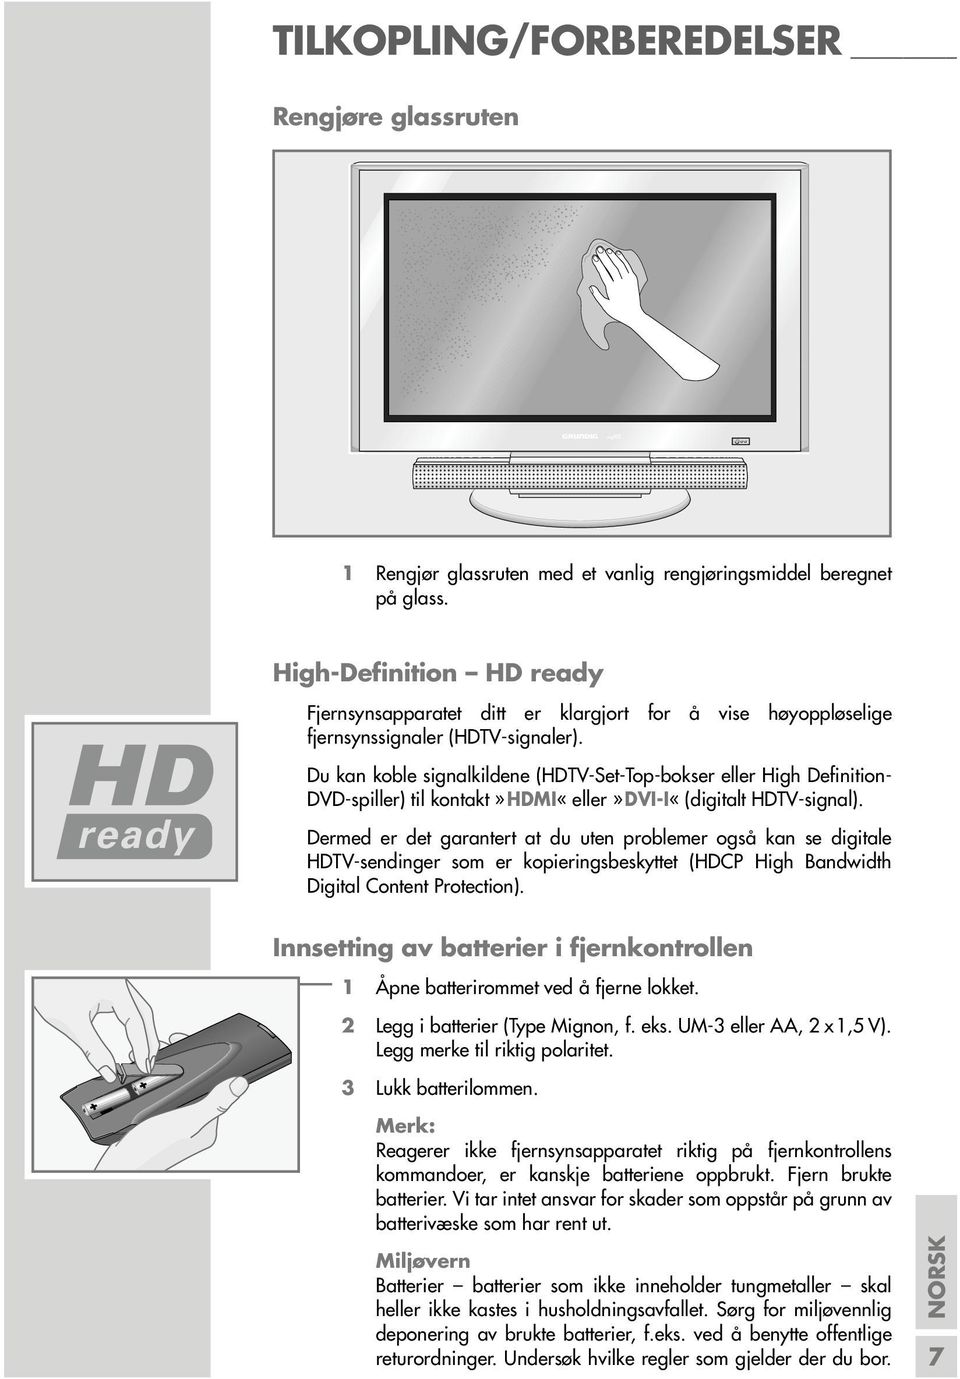 Du kan koble signalkildene (HDTV-Set-Top-bokser eller High Definition- DVD-spiller) til kontakt»hdmi«eller»dvi-i«(digitalt HDTV-signal).